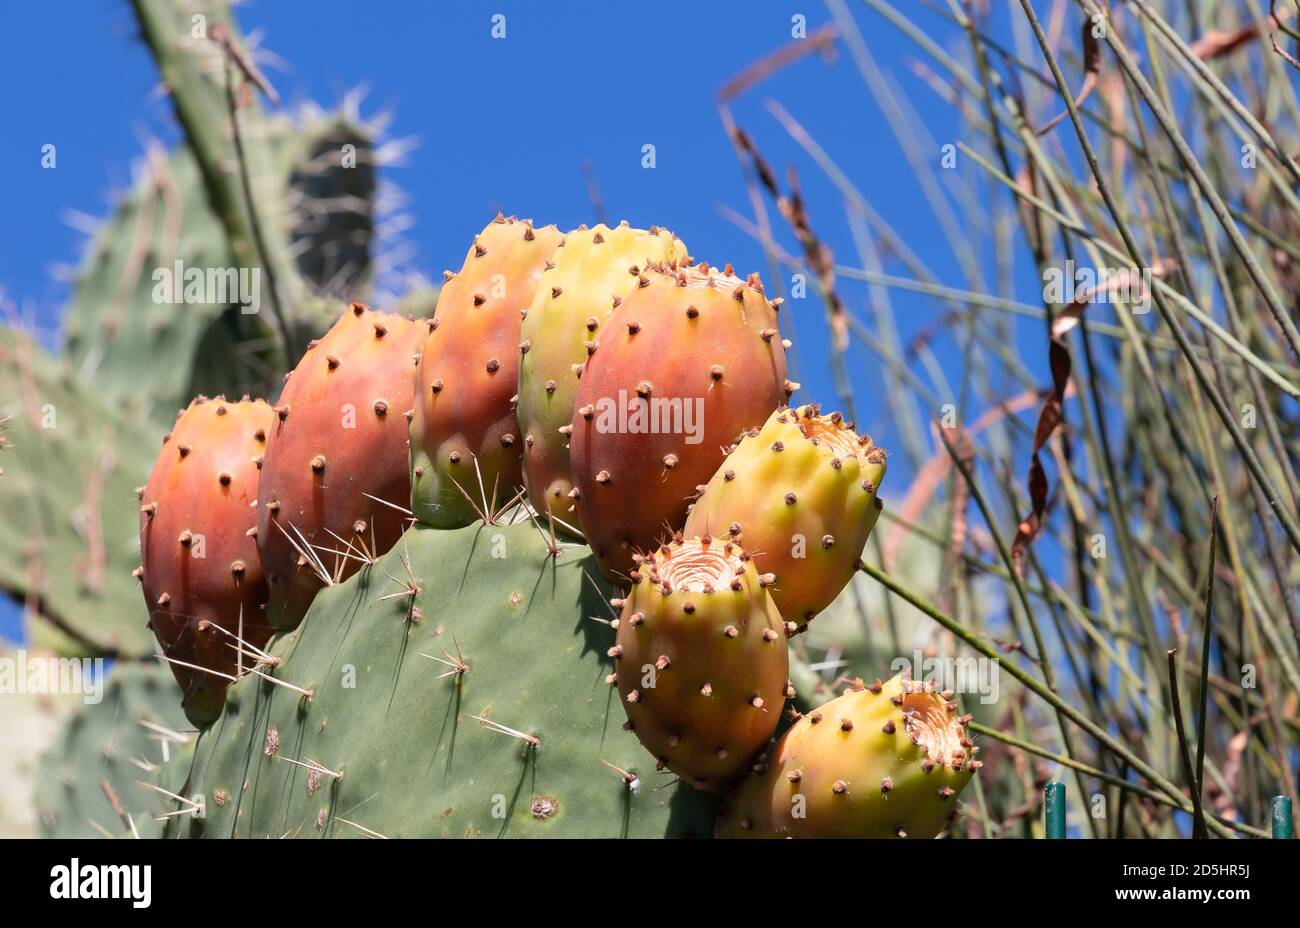 Kaktus aus Kaktus mit Kaktus aus Kaktus mit Kaktus in roter Farbe. Opuntia, allgemein als Kaktusbirne bezeichnet, ist eine Gattung in der Kaktusfamilie, Cactaceae. Stachelige Birnen Stockfoto